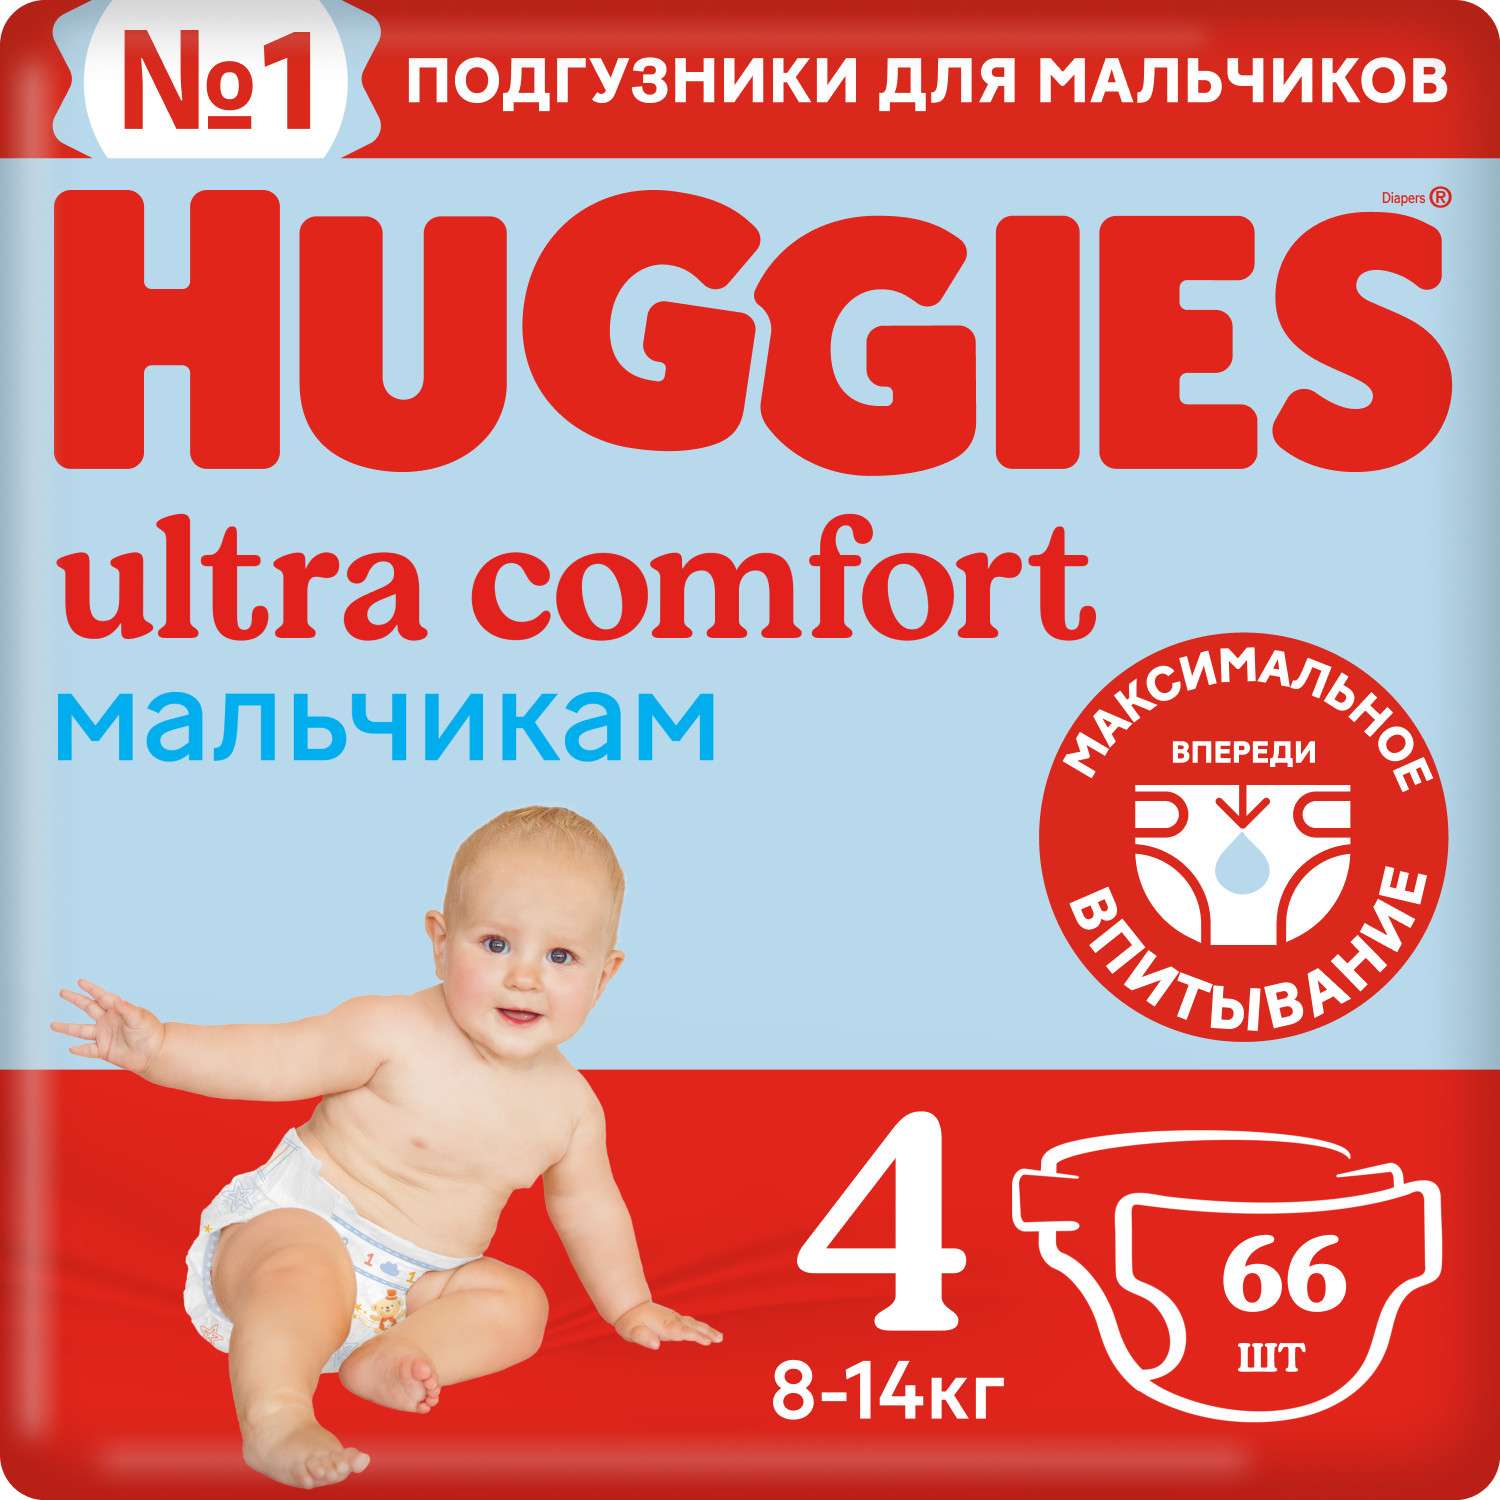 Подгузники для мальчиков Huggies Ultra Comfort 4 8-14кг 66шт - фото 2